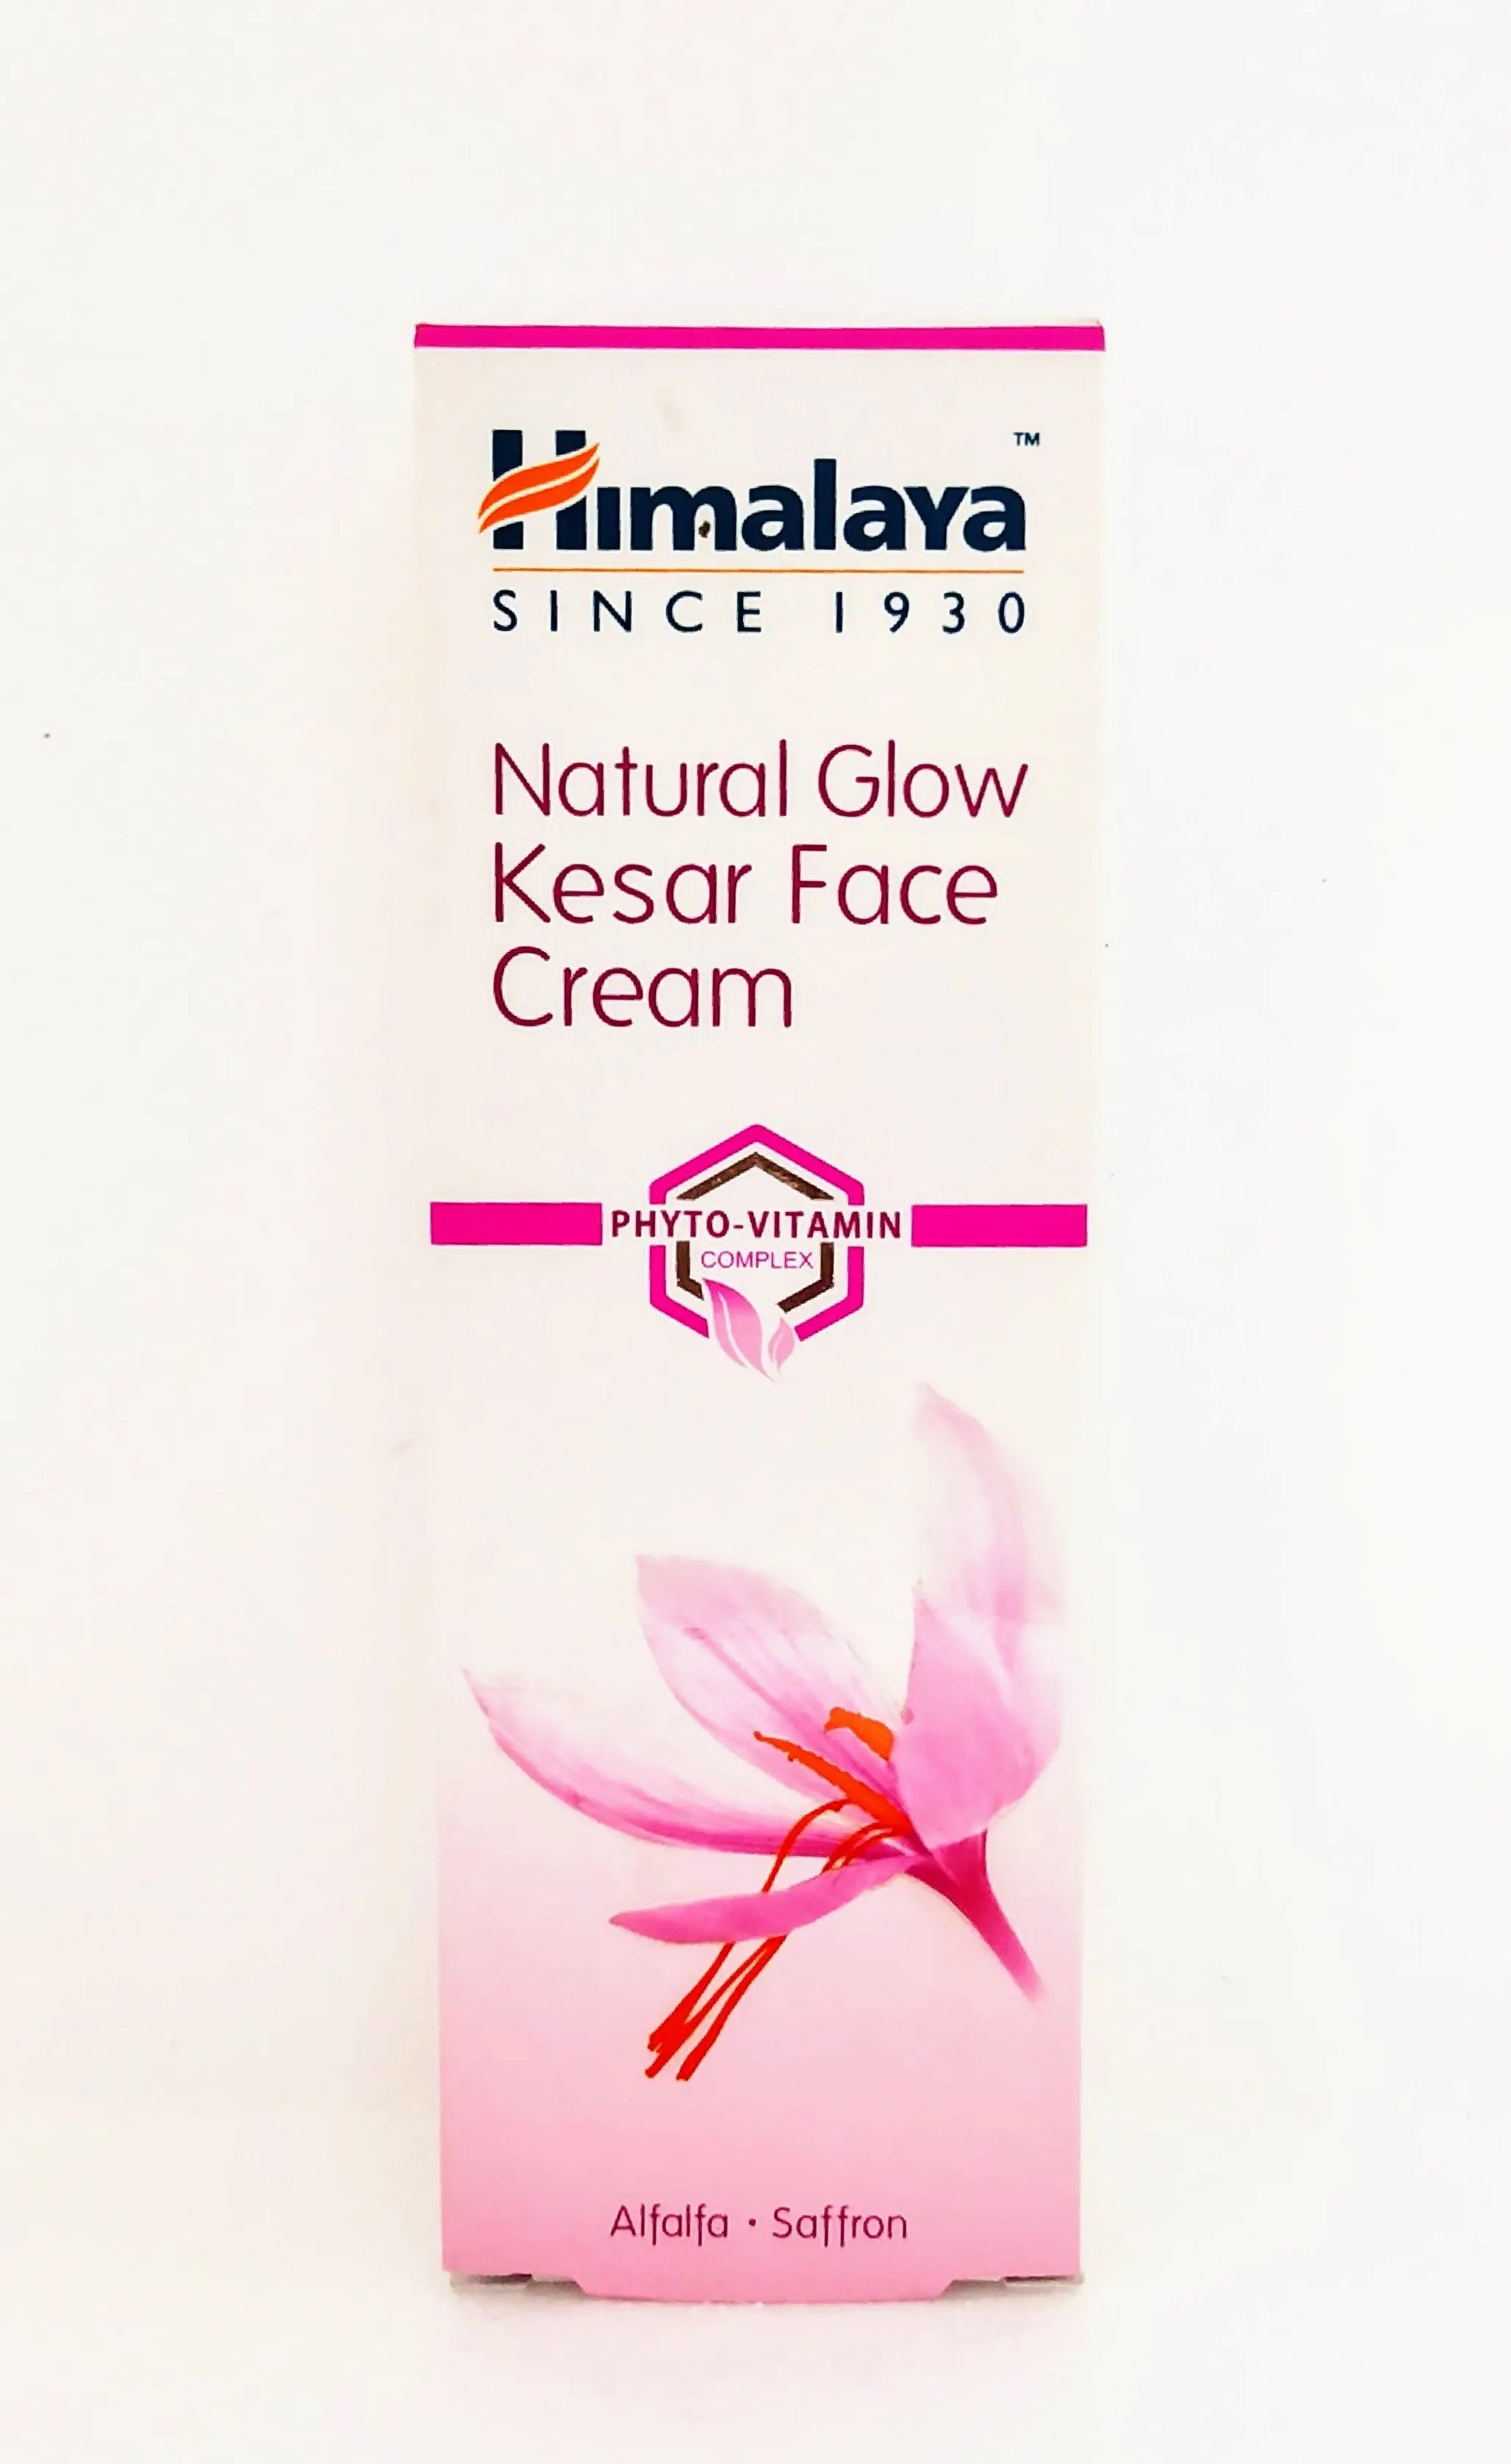 Himalaya nature glow kesar face cream Himalaya